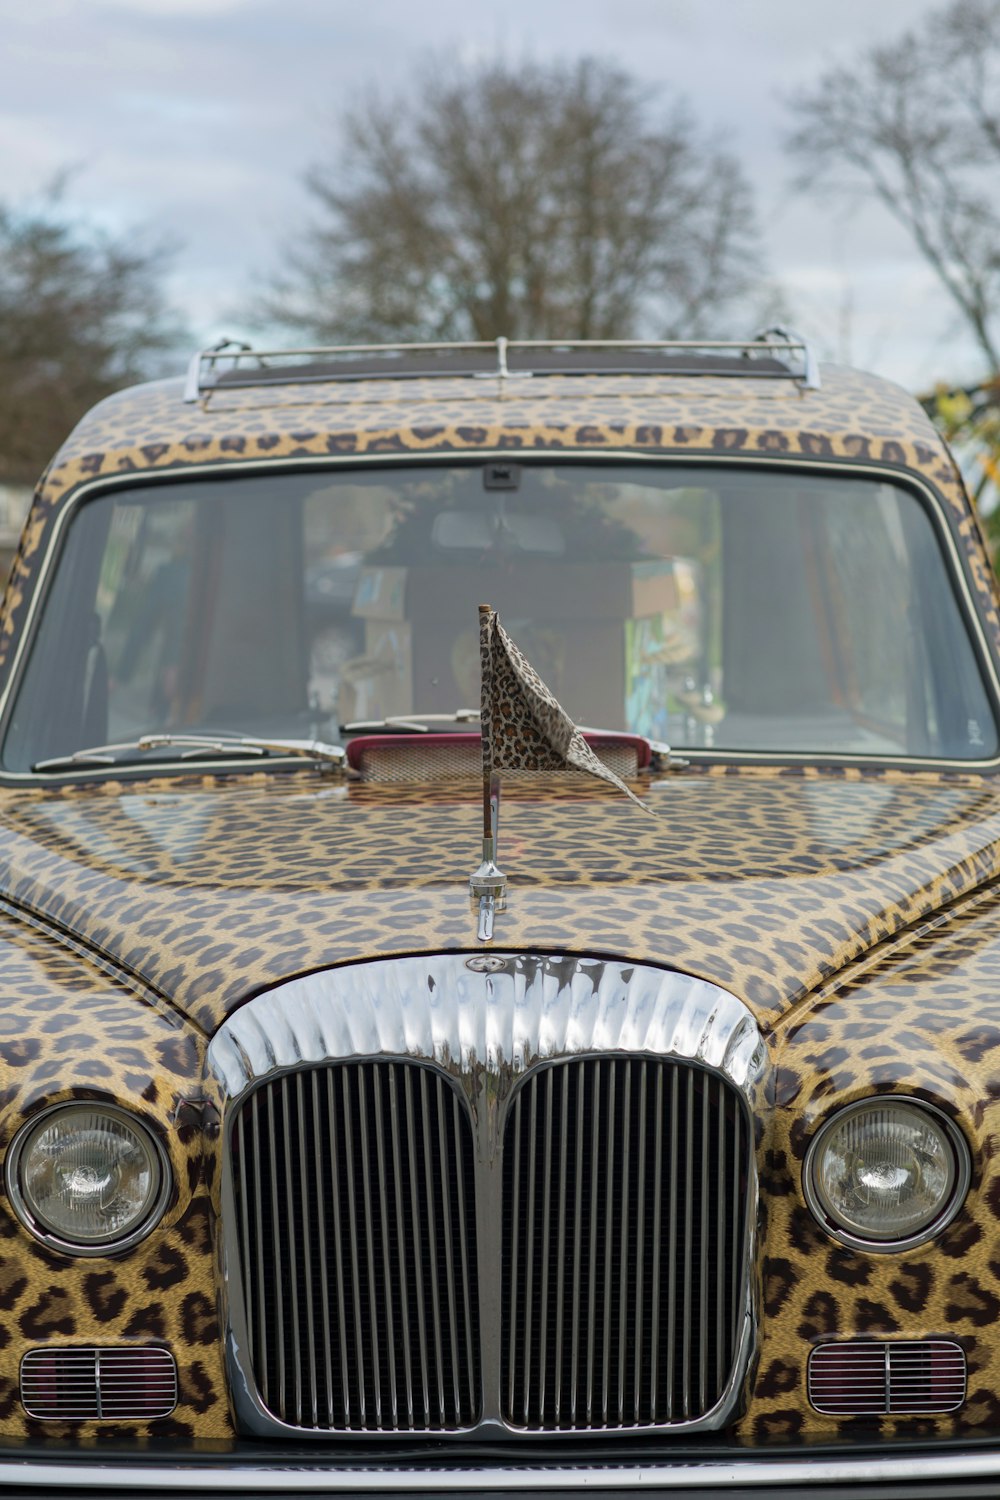 a leopard print car with a flag on the hood